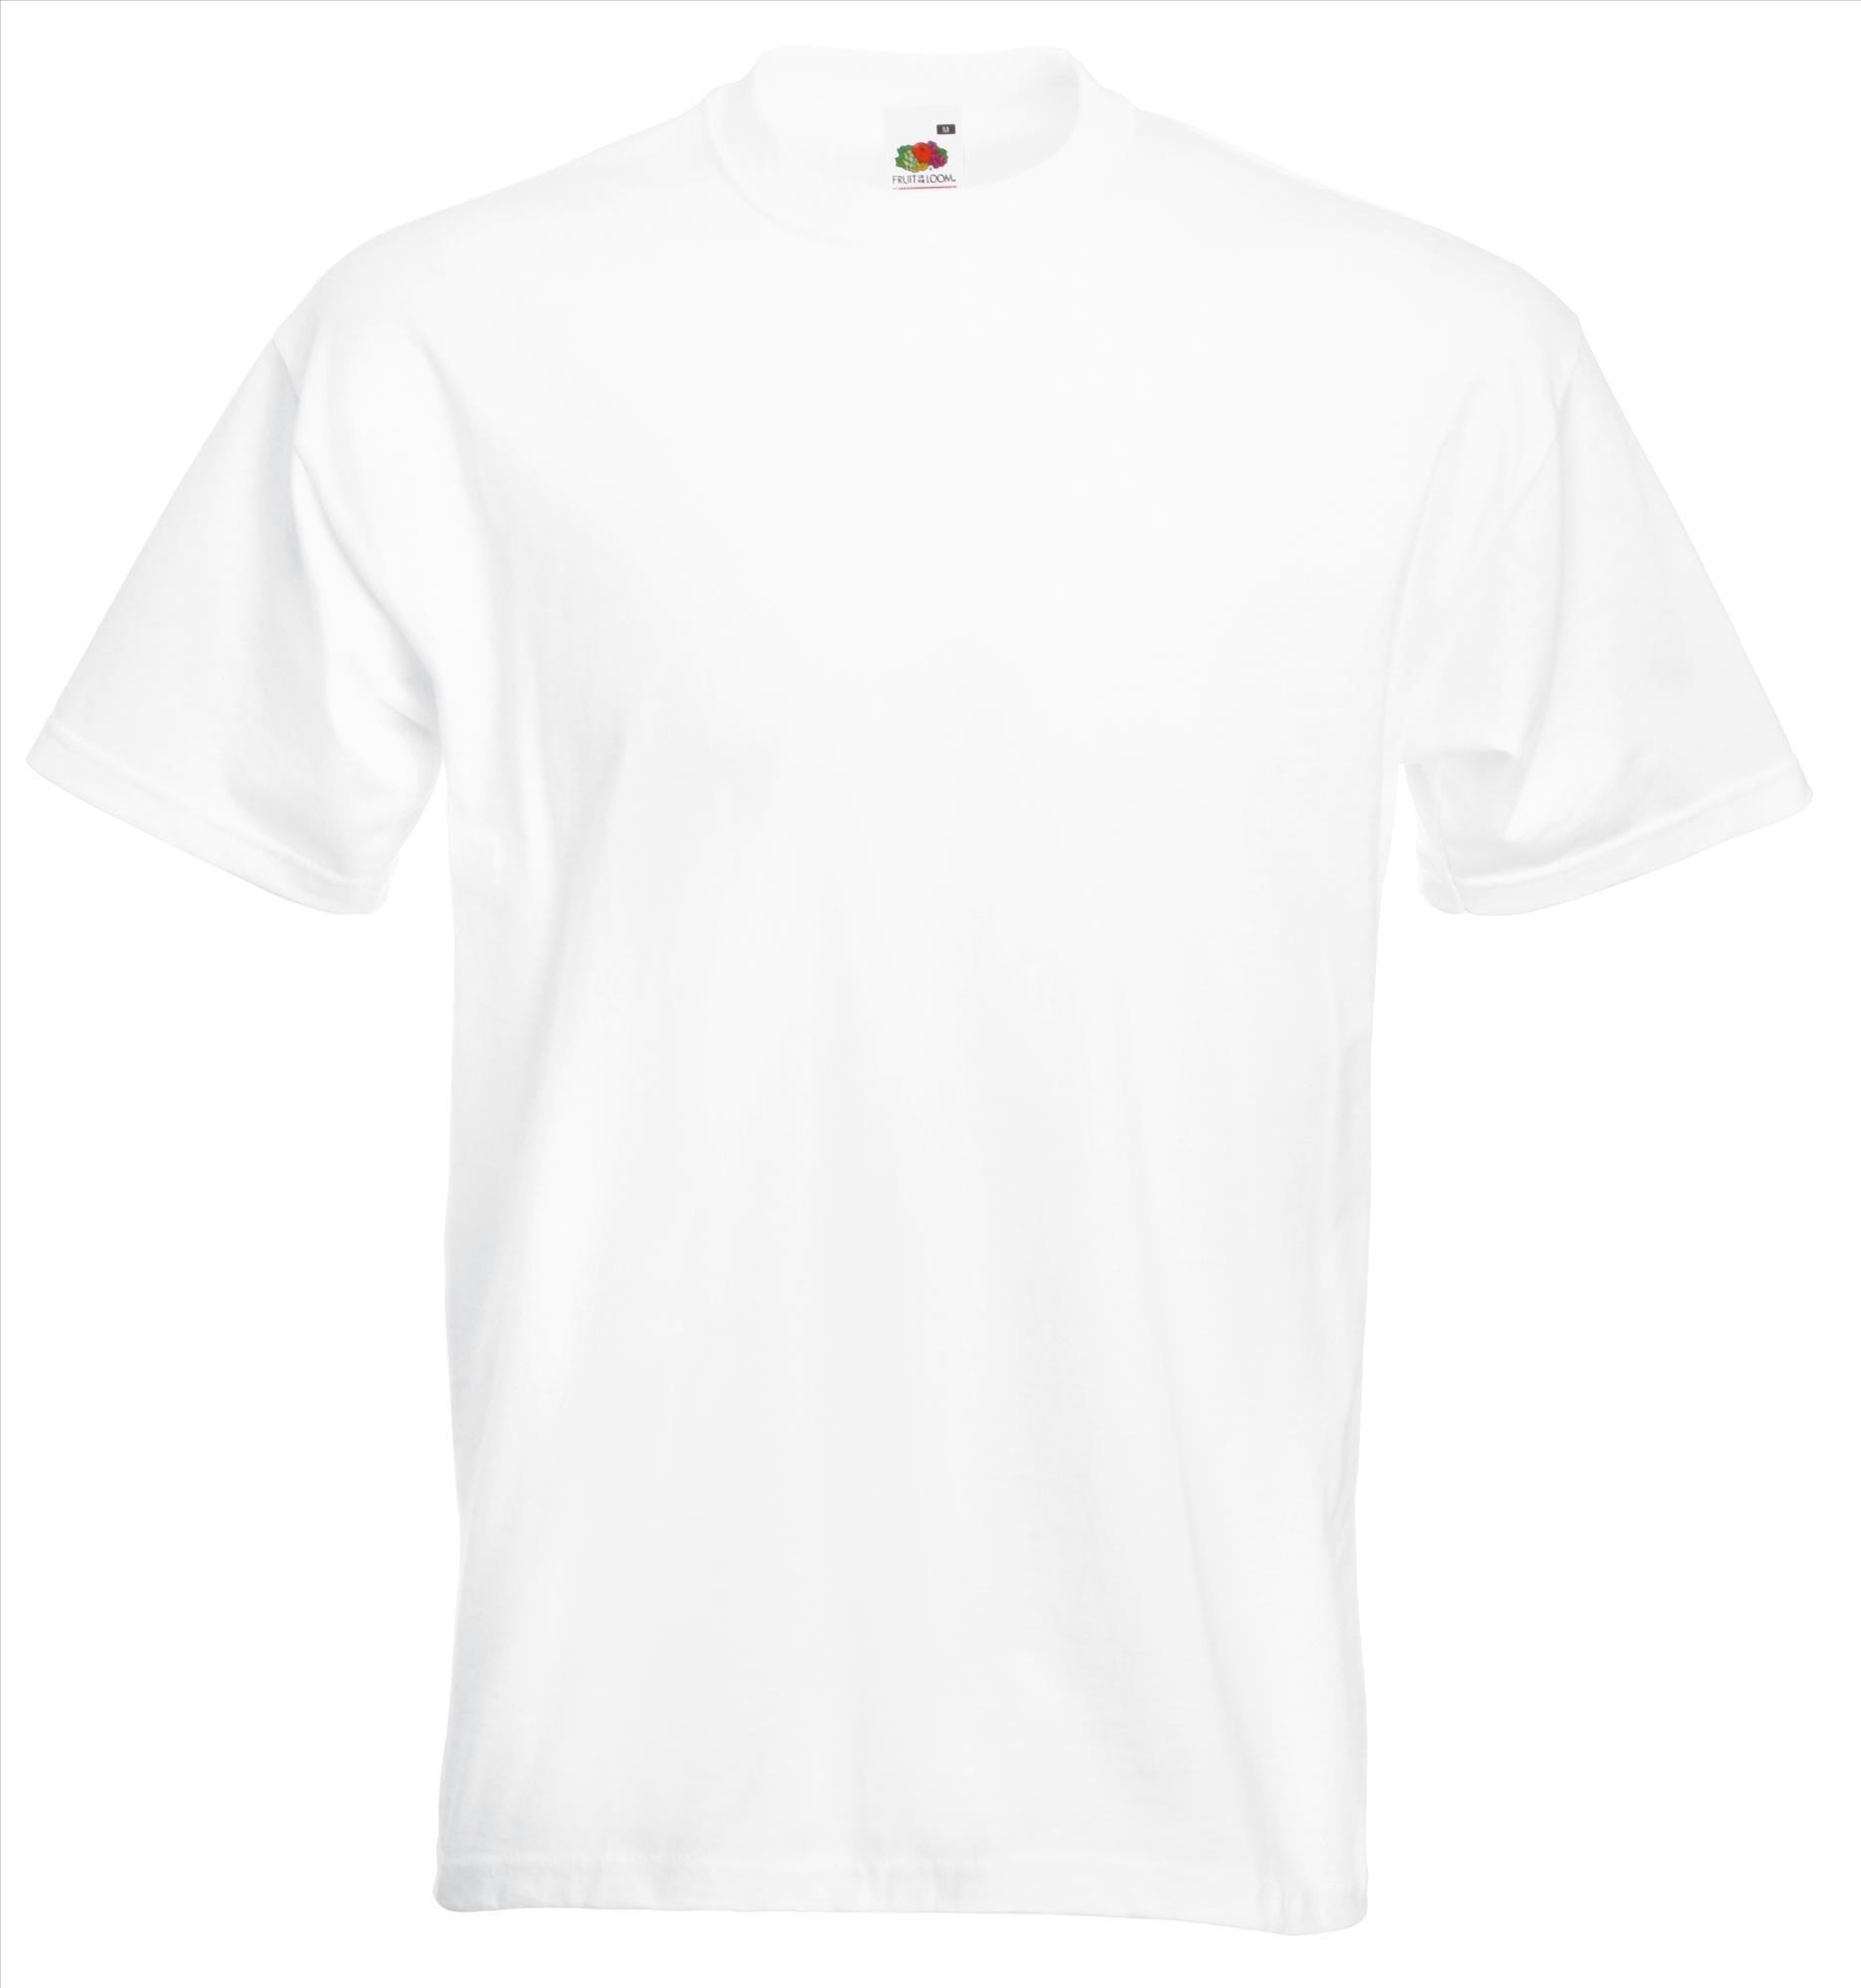 Dik gebreide T-shirt wit voor mannen ronde hals te personaliseren